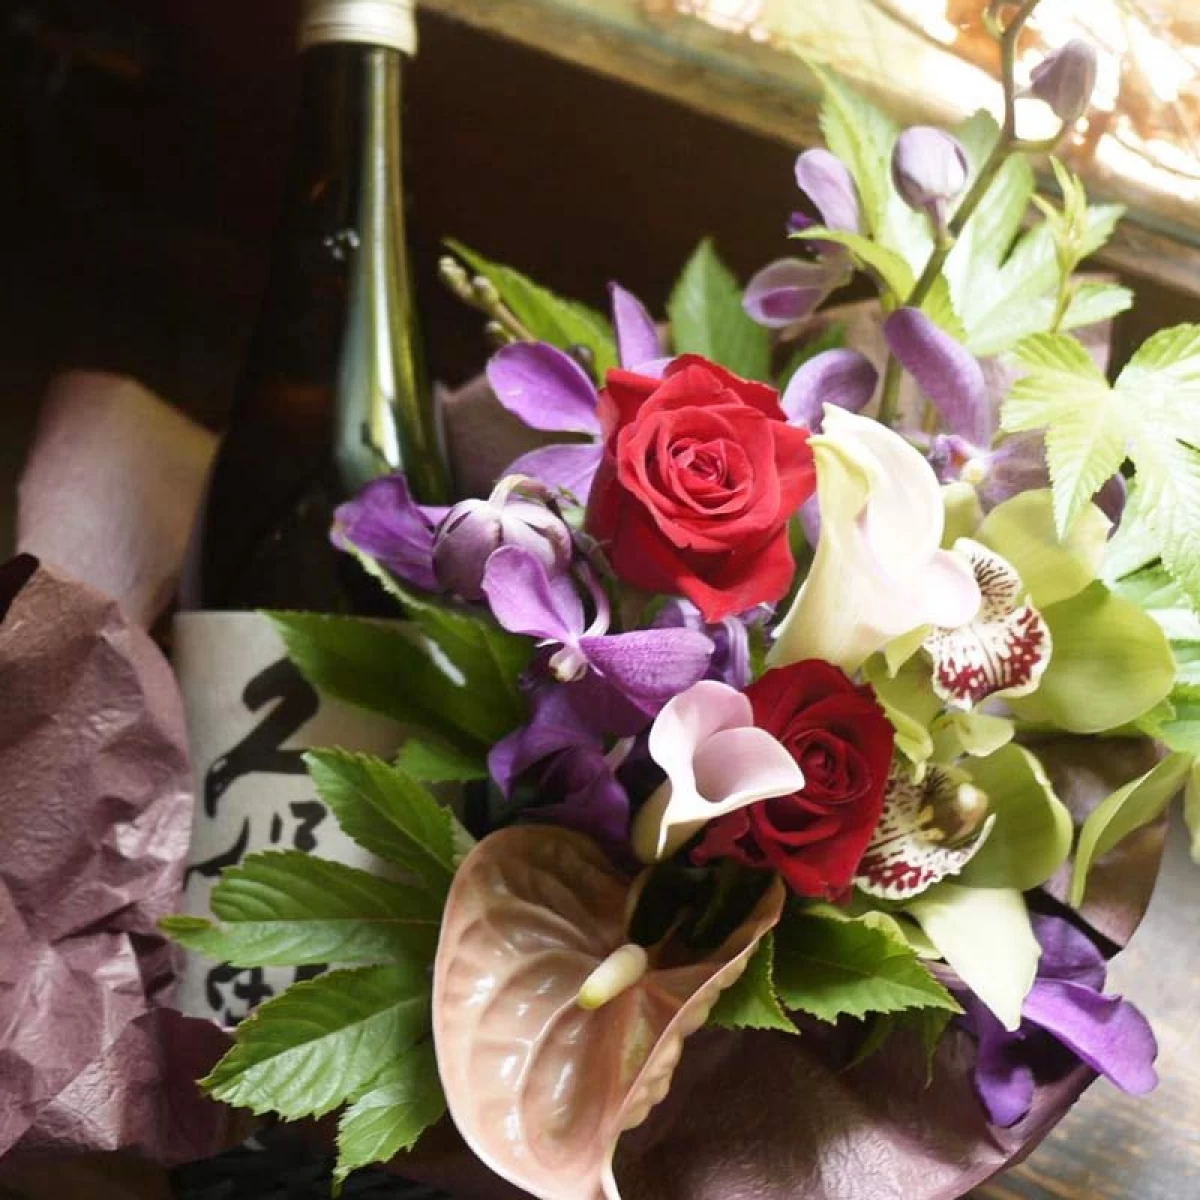 和風な結婚祝い 古希 還暦祝い[花 酒ギフト]日本酒(久保田)とアレンジフラワーのセット